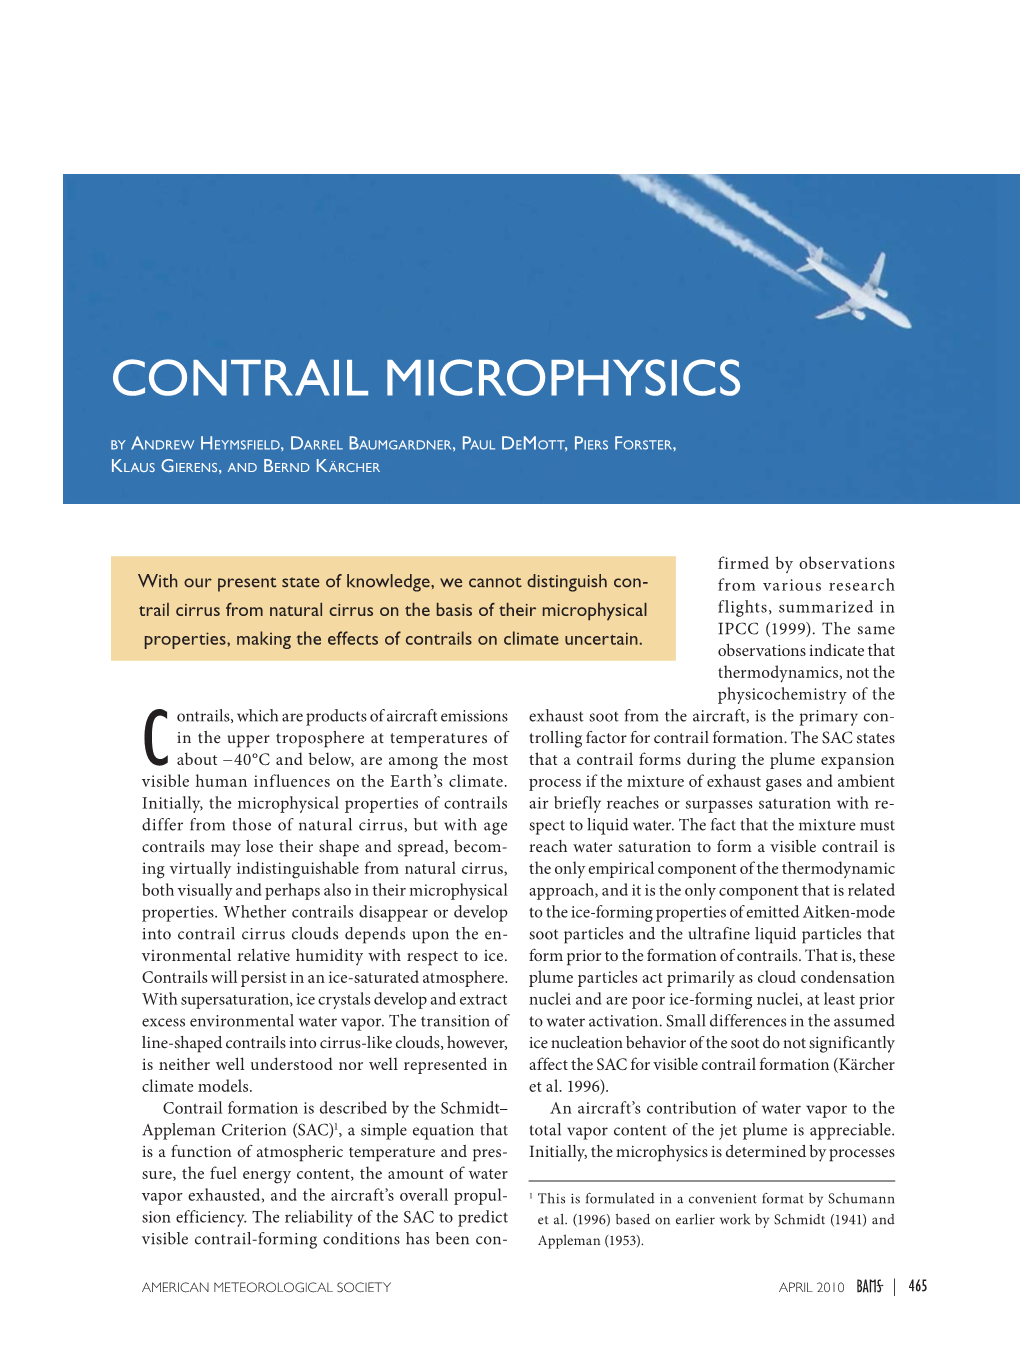 Contrail Microphysics